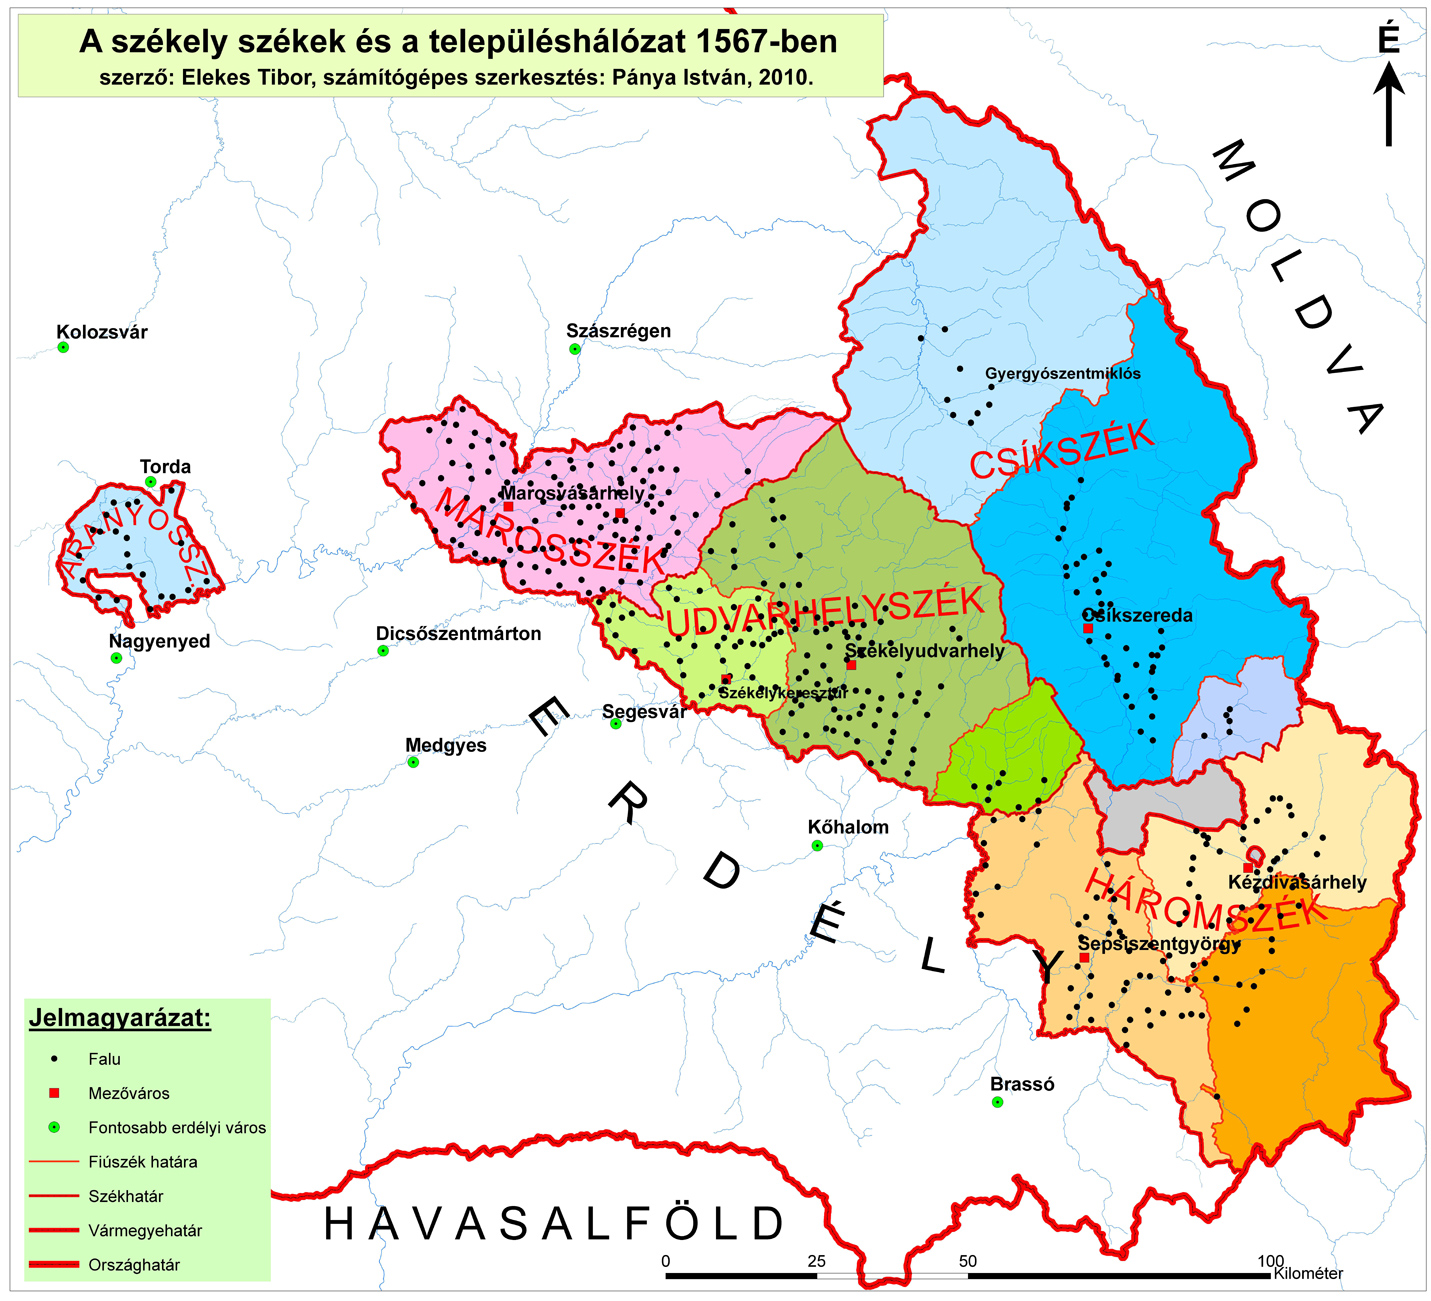 erdély megyéi térkép Az erdélyi megyék közigazgatási határainak változása a középkortól  erdély megyéi térkép